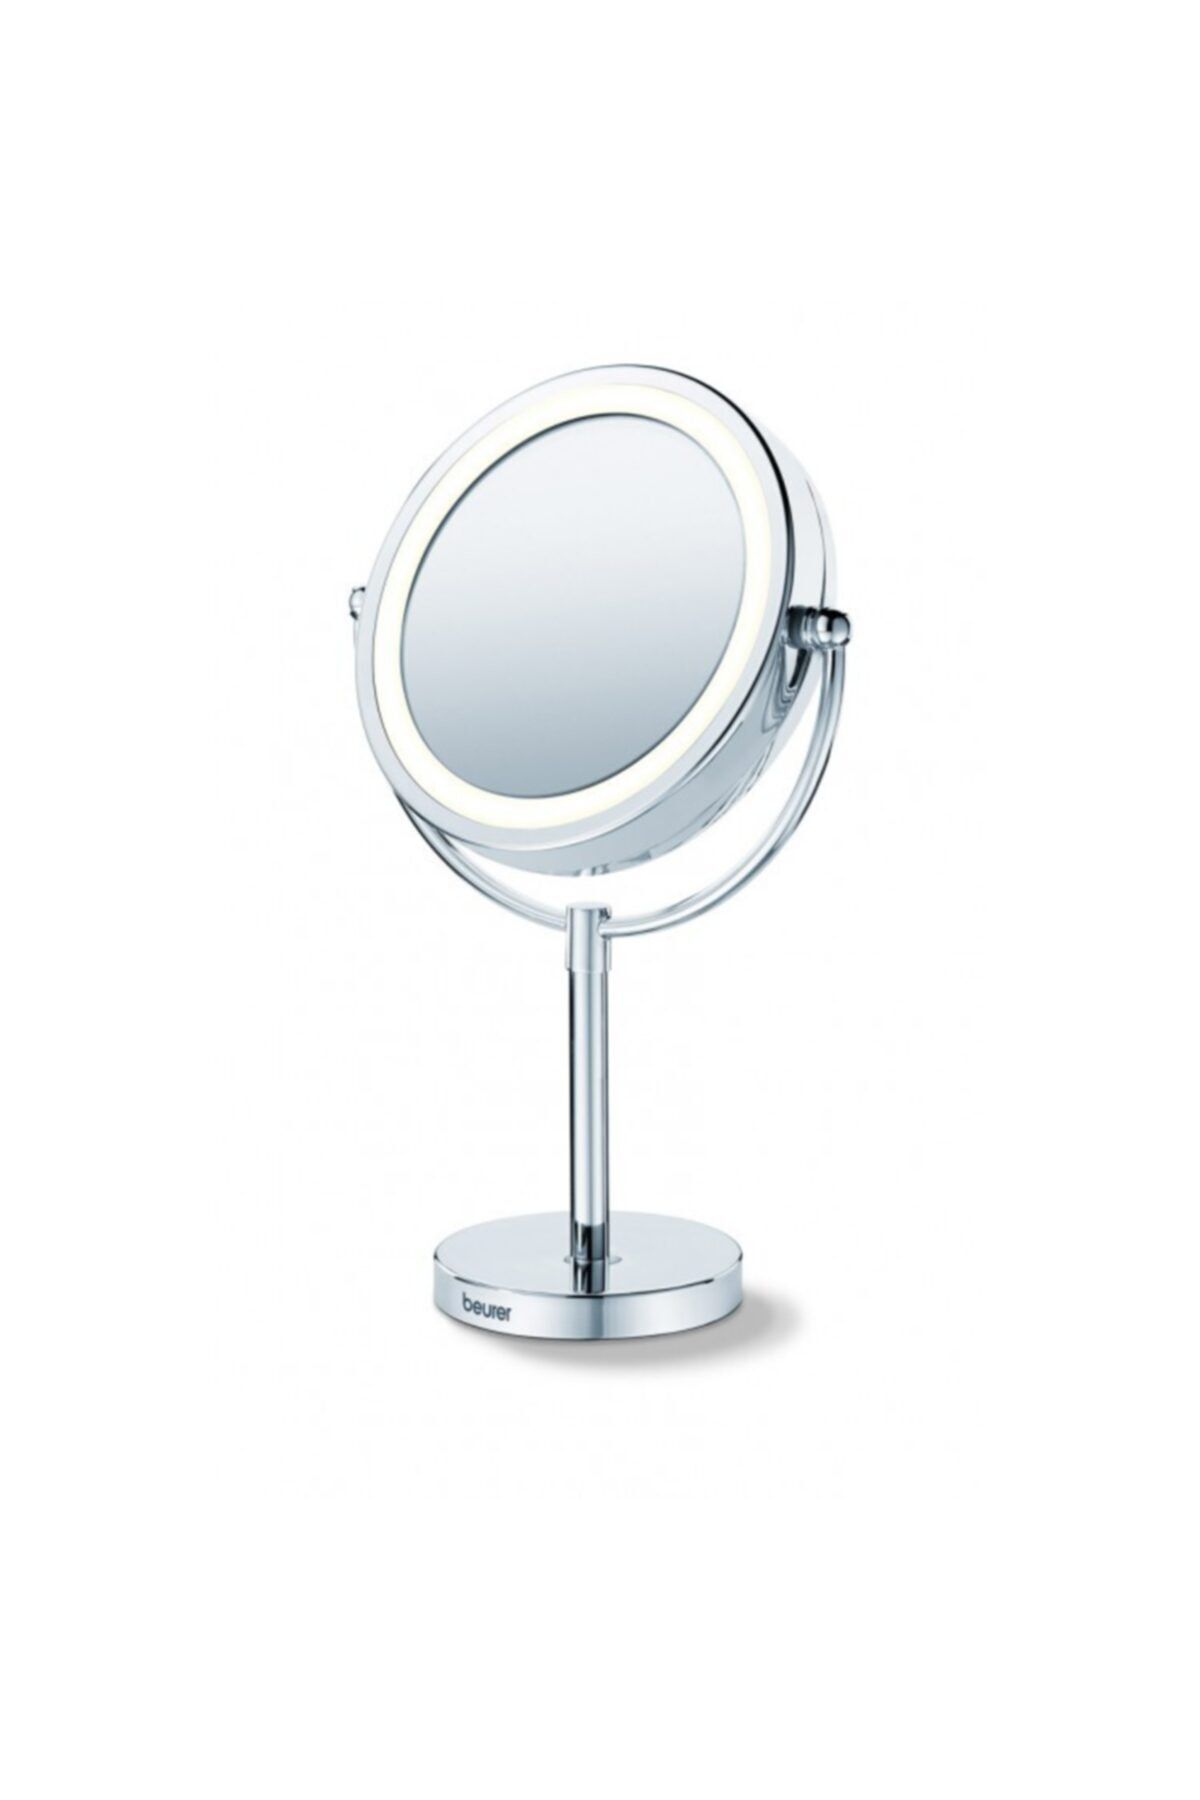 Beurer Bs 69 Işıklı Fonksiyonel Makyaj Aynası Çift Taraflı